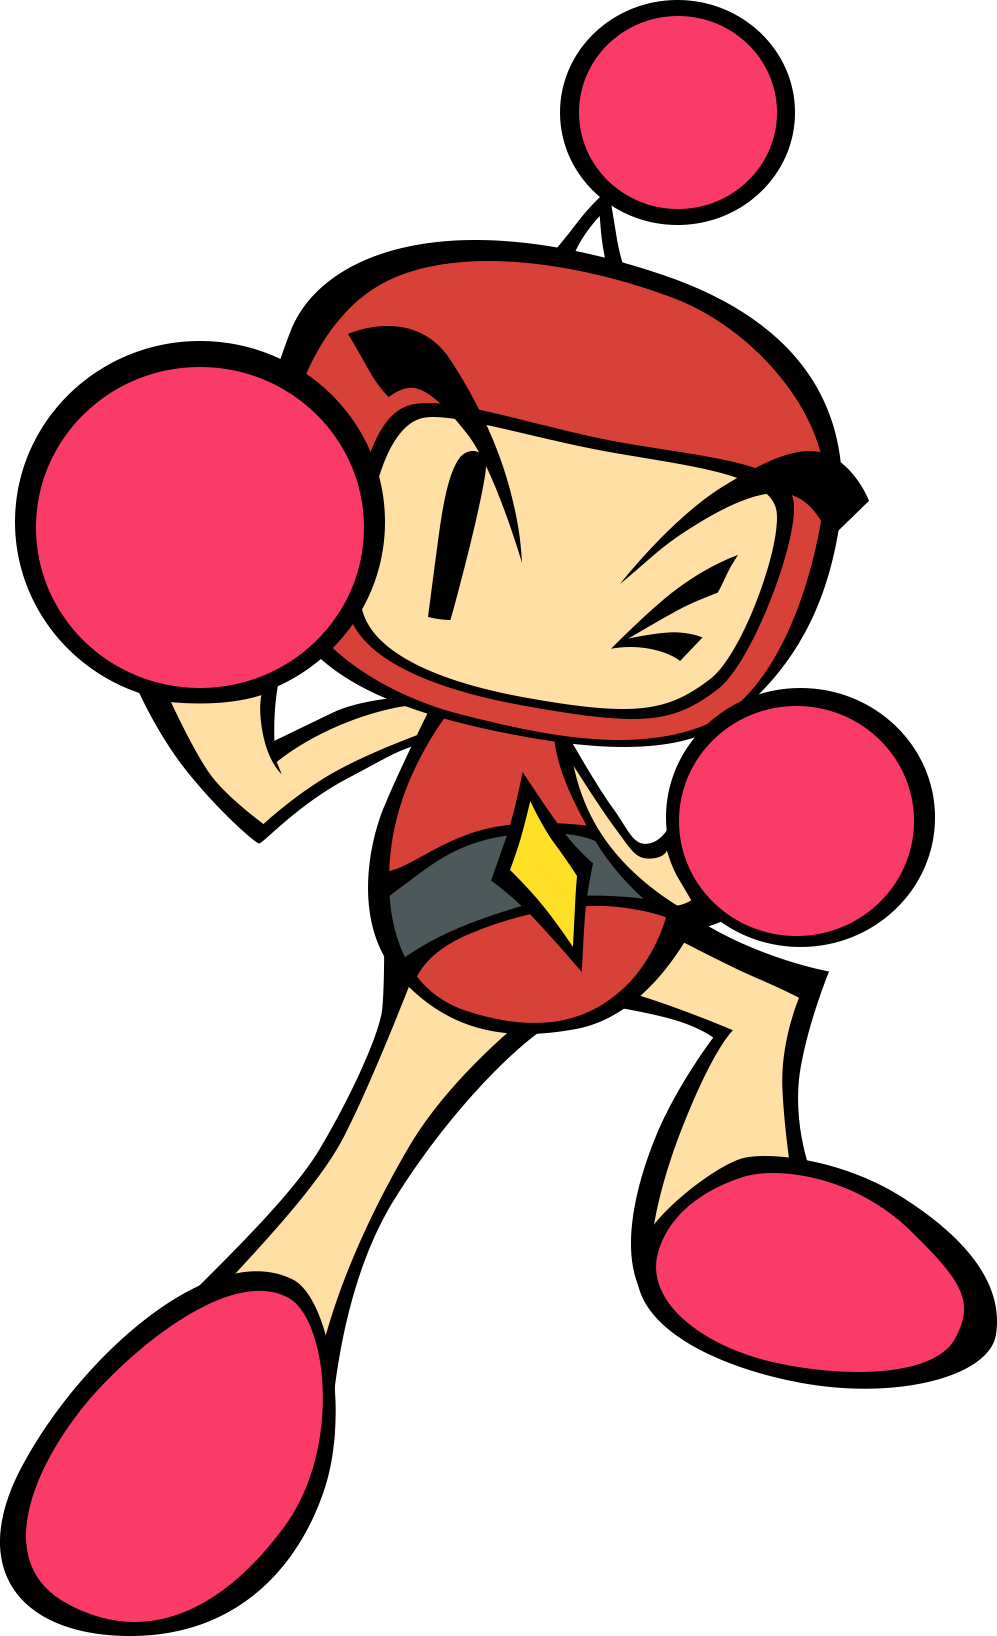 Bomberman Land 2 - Wikipedia